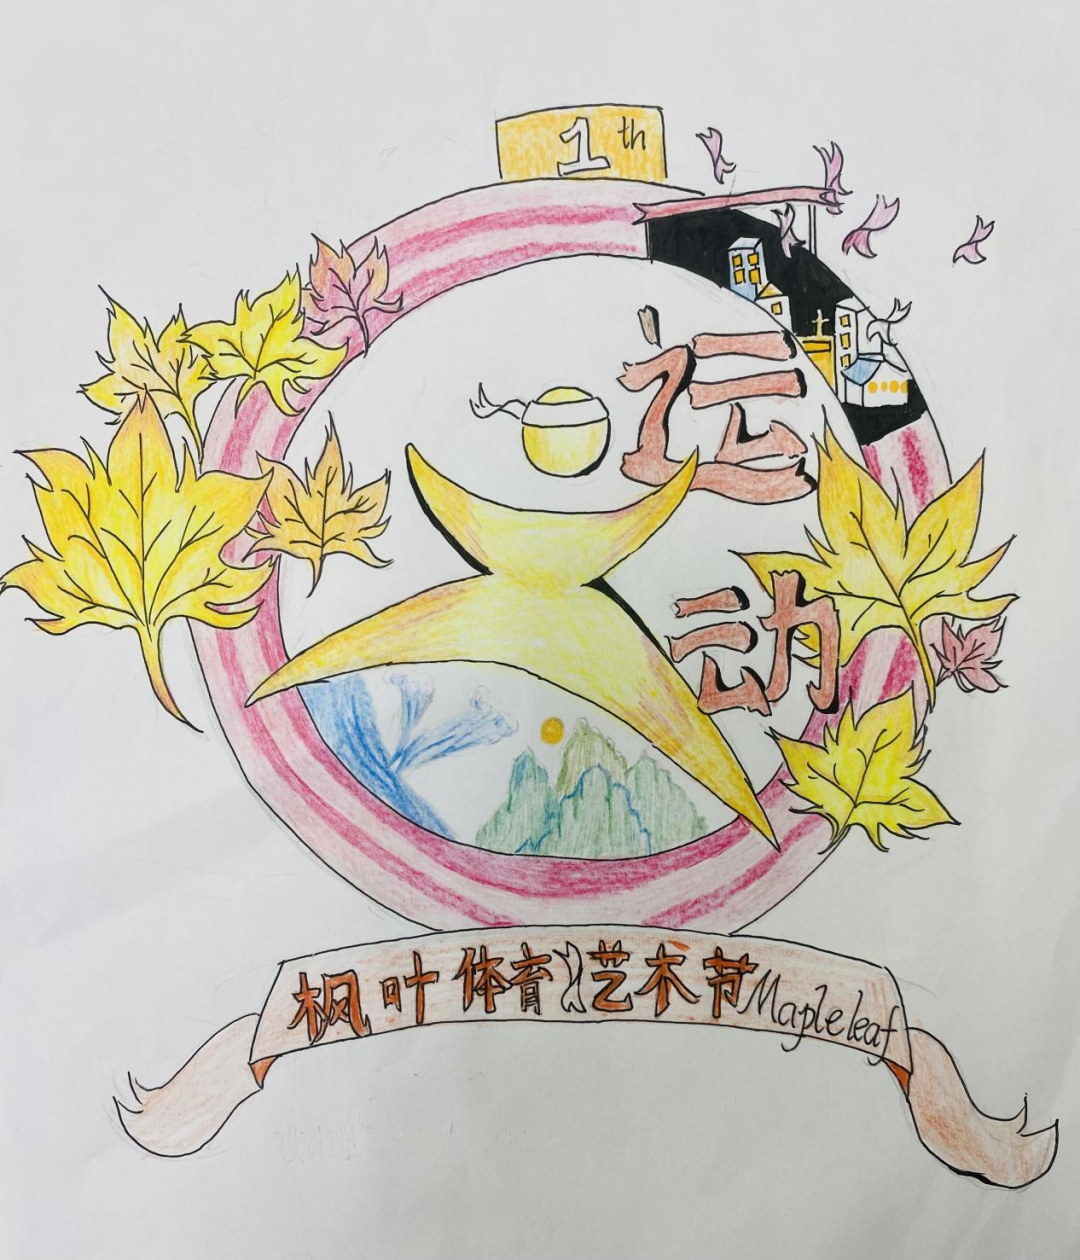 【深圳枫叶】体育文化艺术节系列——会徽设计大赛